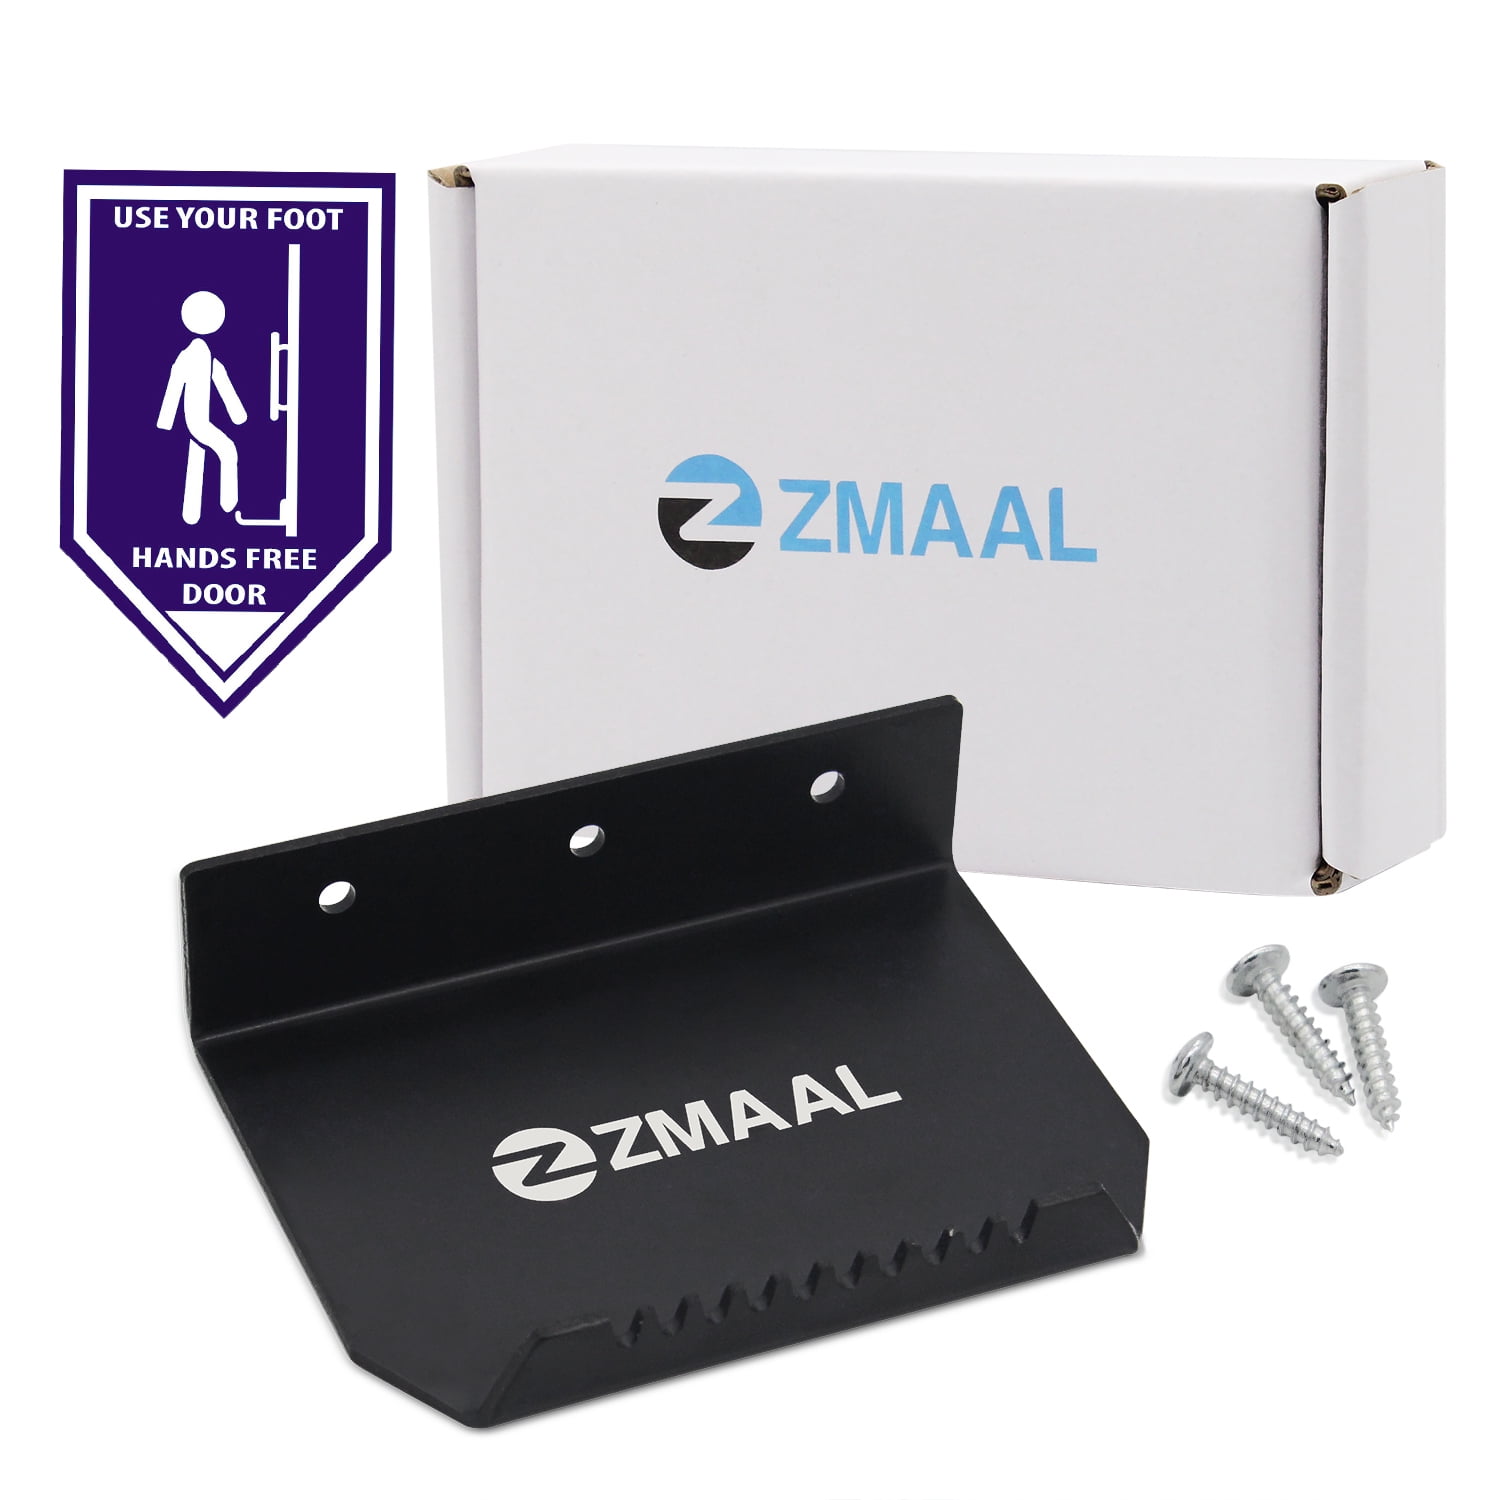 2Pack ZMAAL Use Foot Sticker No Touch Use Foot Vinyl Door Sticker Hands-Free Door Decal Foot Operated Door Opener 